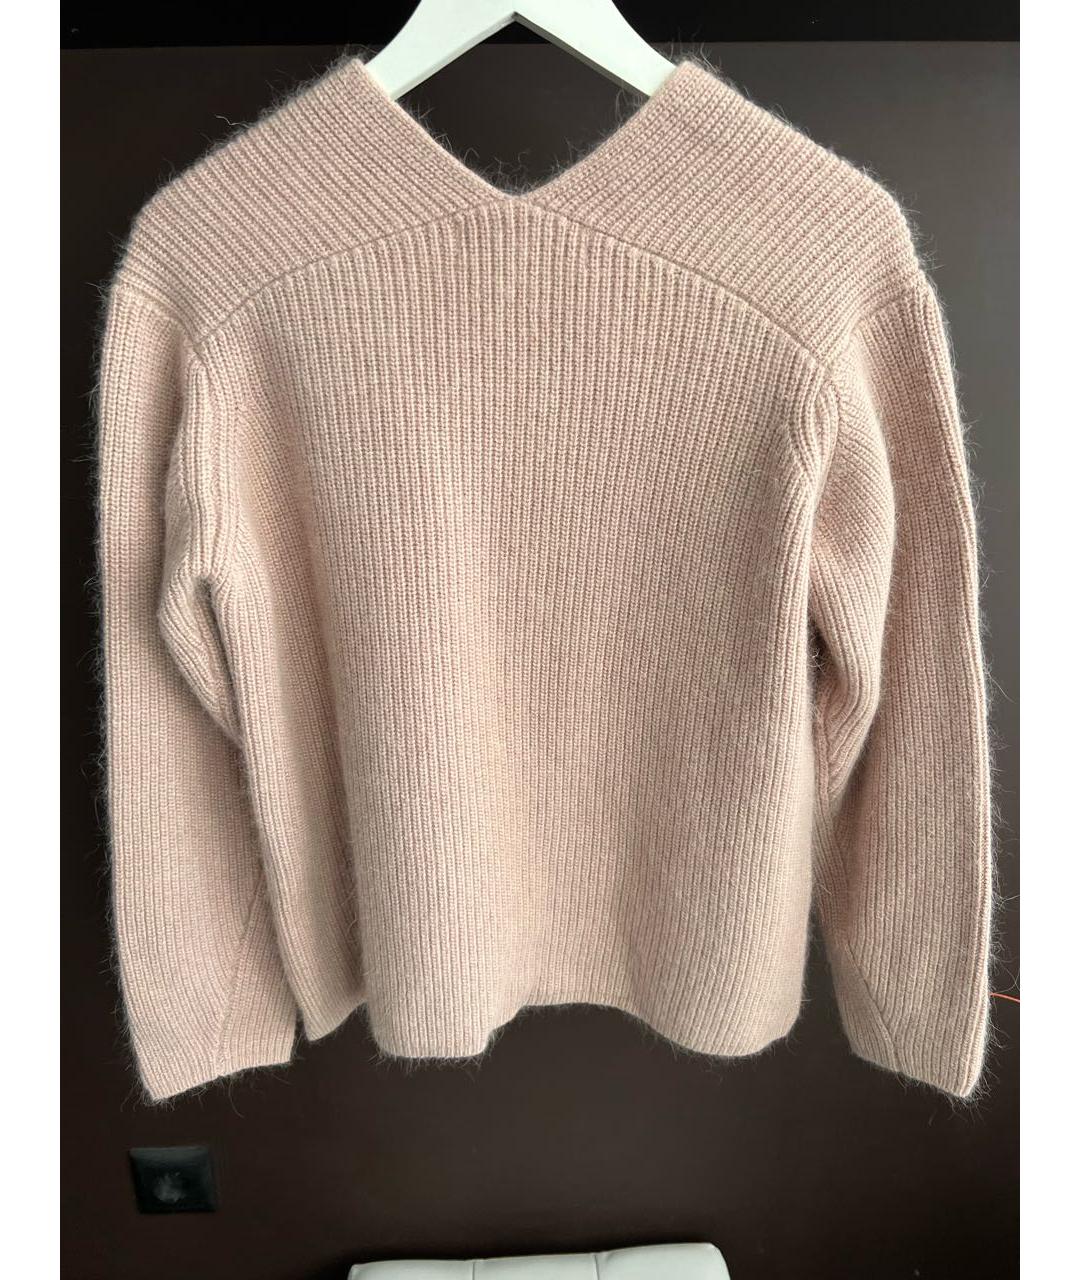 12 STOREEZ Розовый шерстяной джемпер / свитер, фото 2